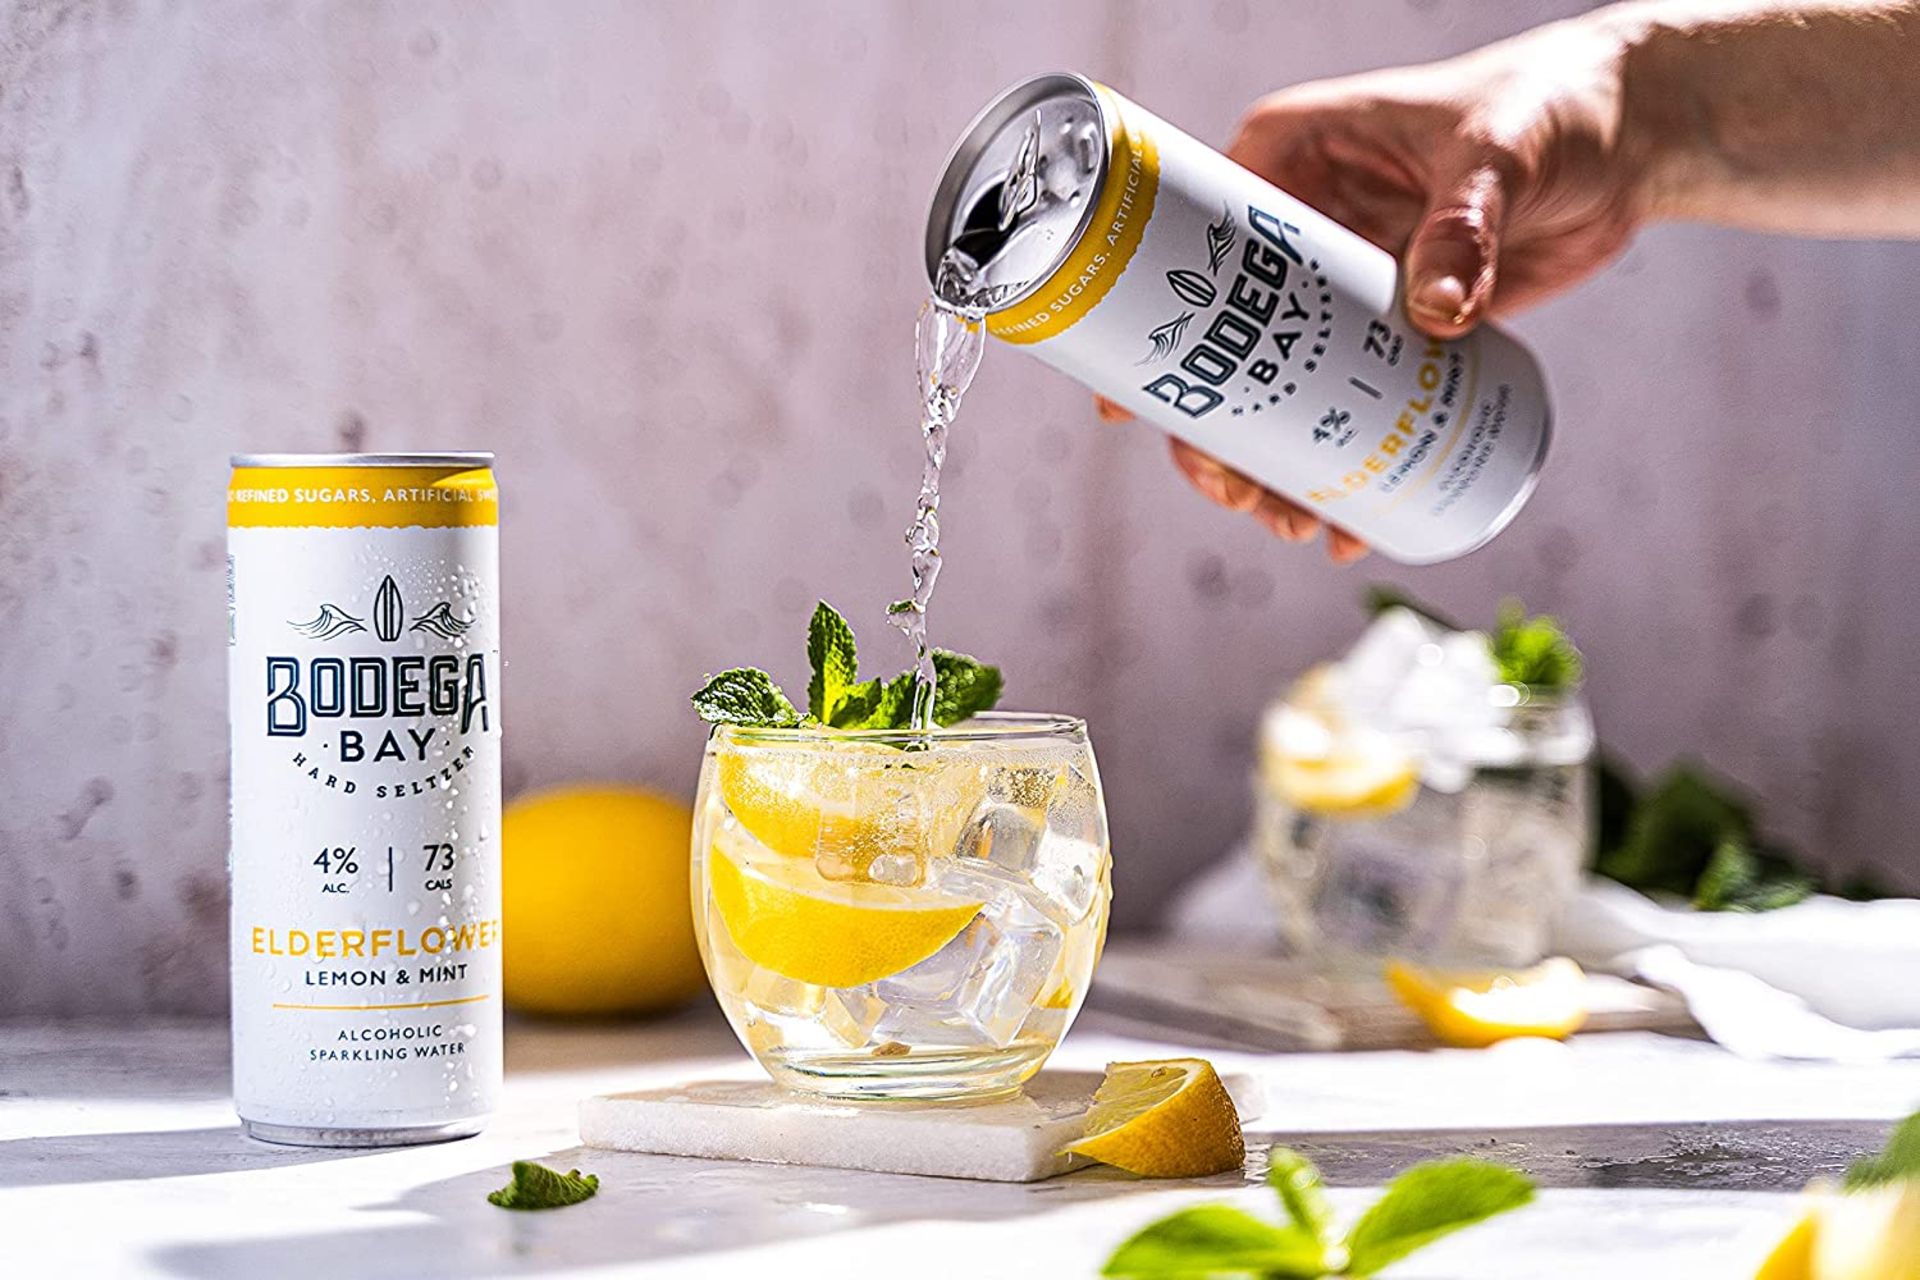 24 x Bodega Bay Hard Seltzer 250ml Alcoholic Sparkling Water Drinks - Elderflower Lemon & Mint - - Image 3 of 8